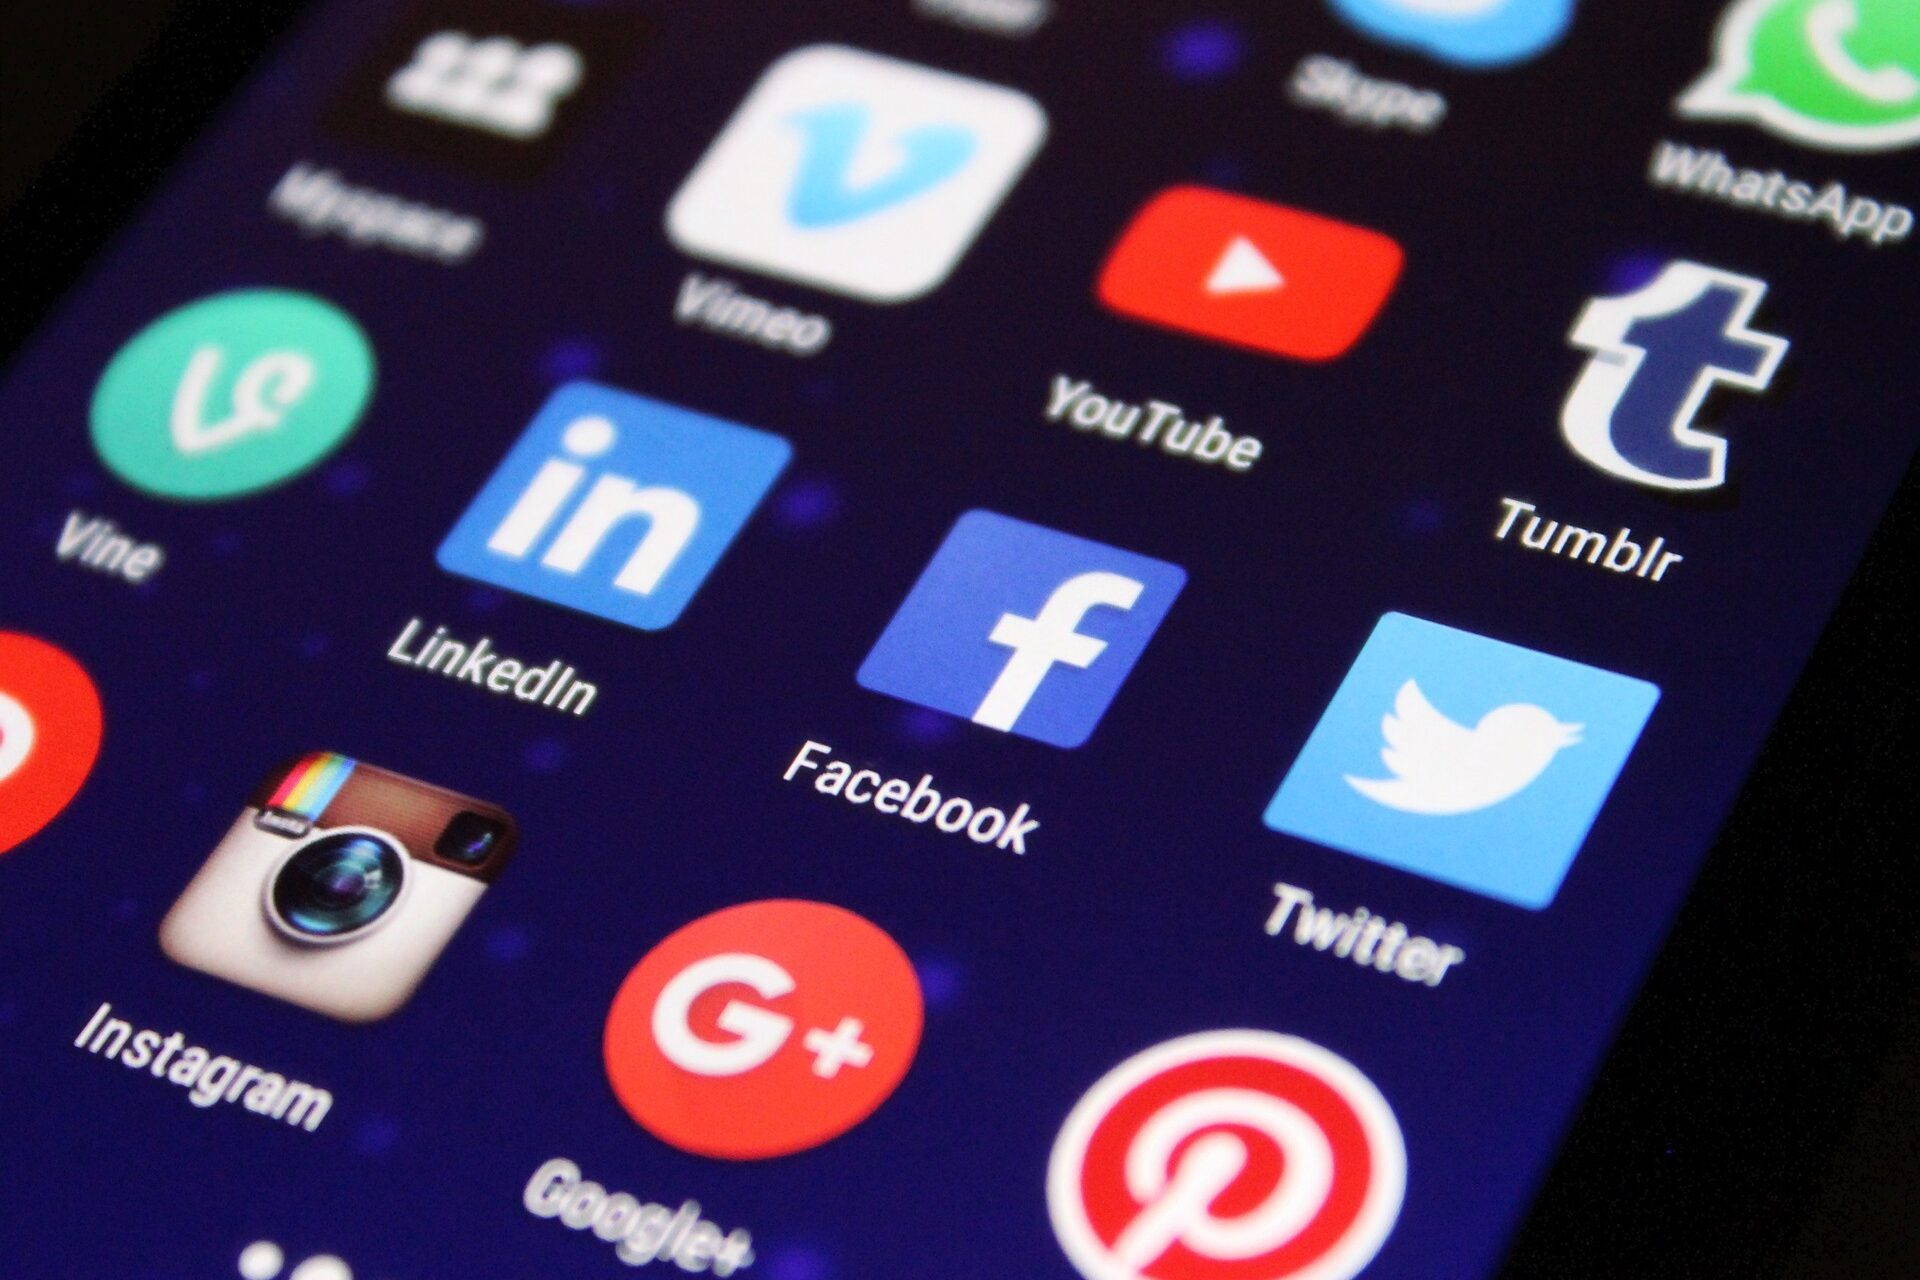 Abbildung von Icons verschiedener Sozialer Medien wie Facebook, YouTube, Google, LinkedIn.